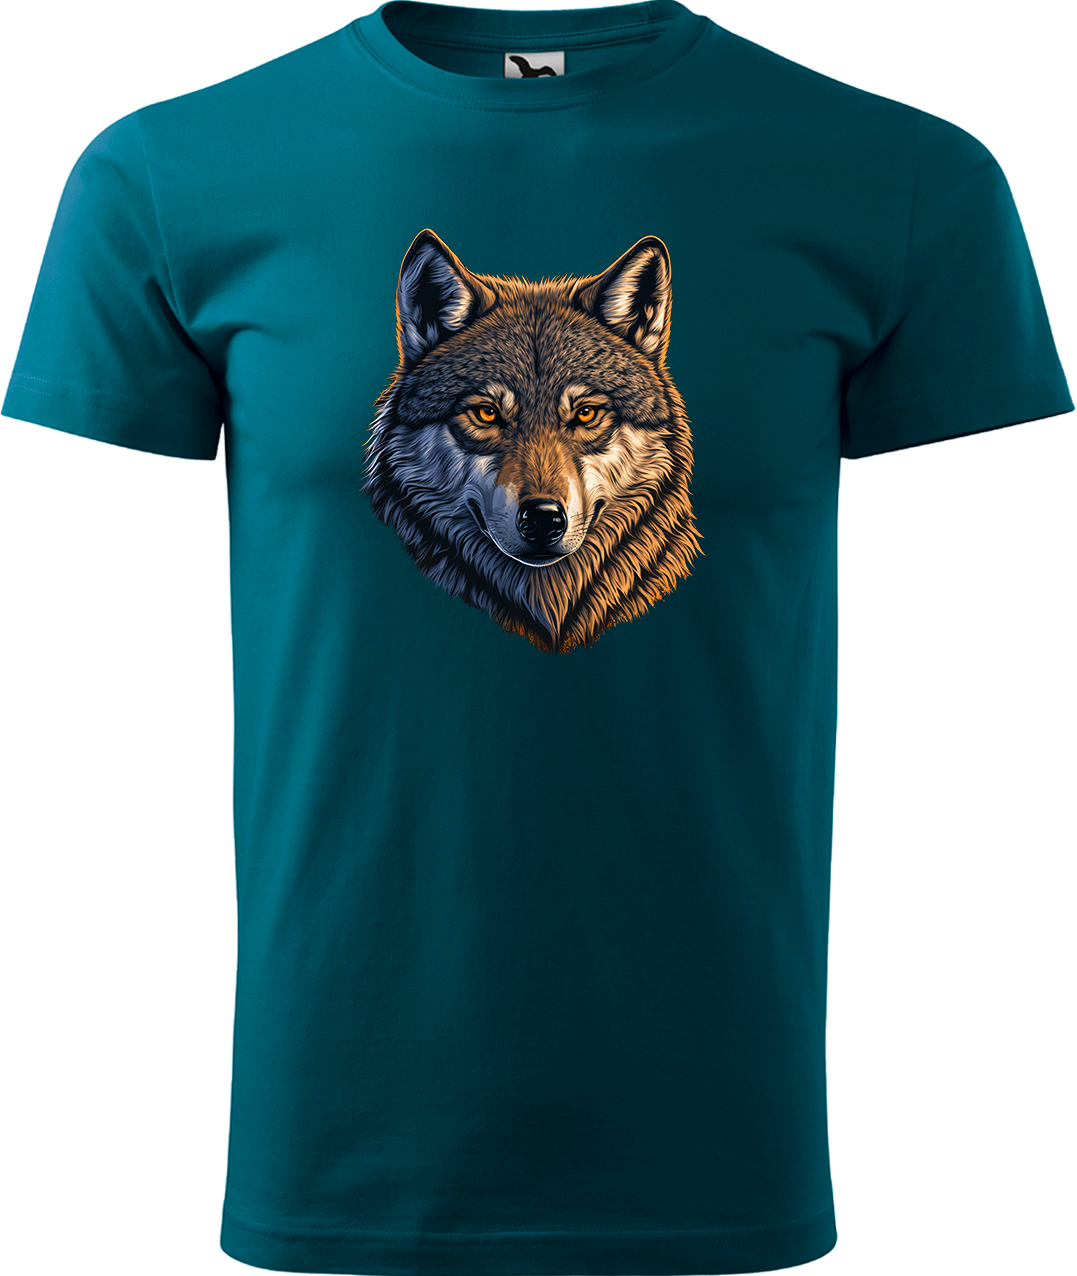 Pánské tričko s vlkem - Hlava vlka Velikost: L, Barva: Petrolejová (93), Střih: pánský